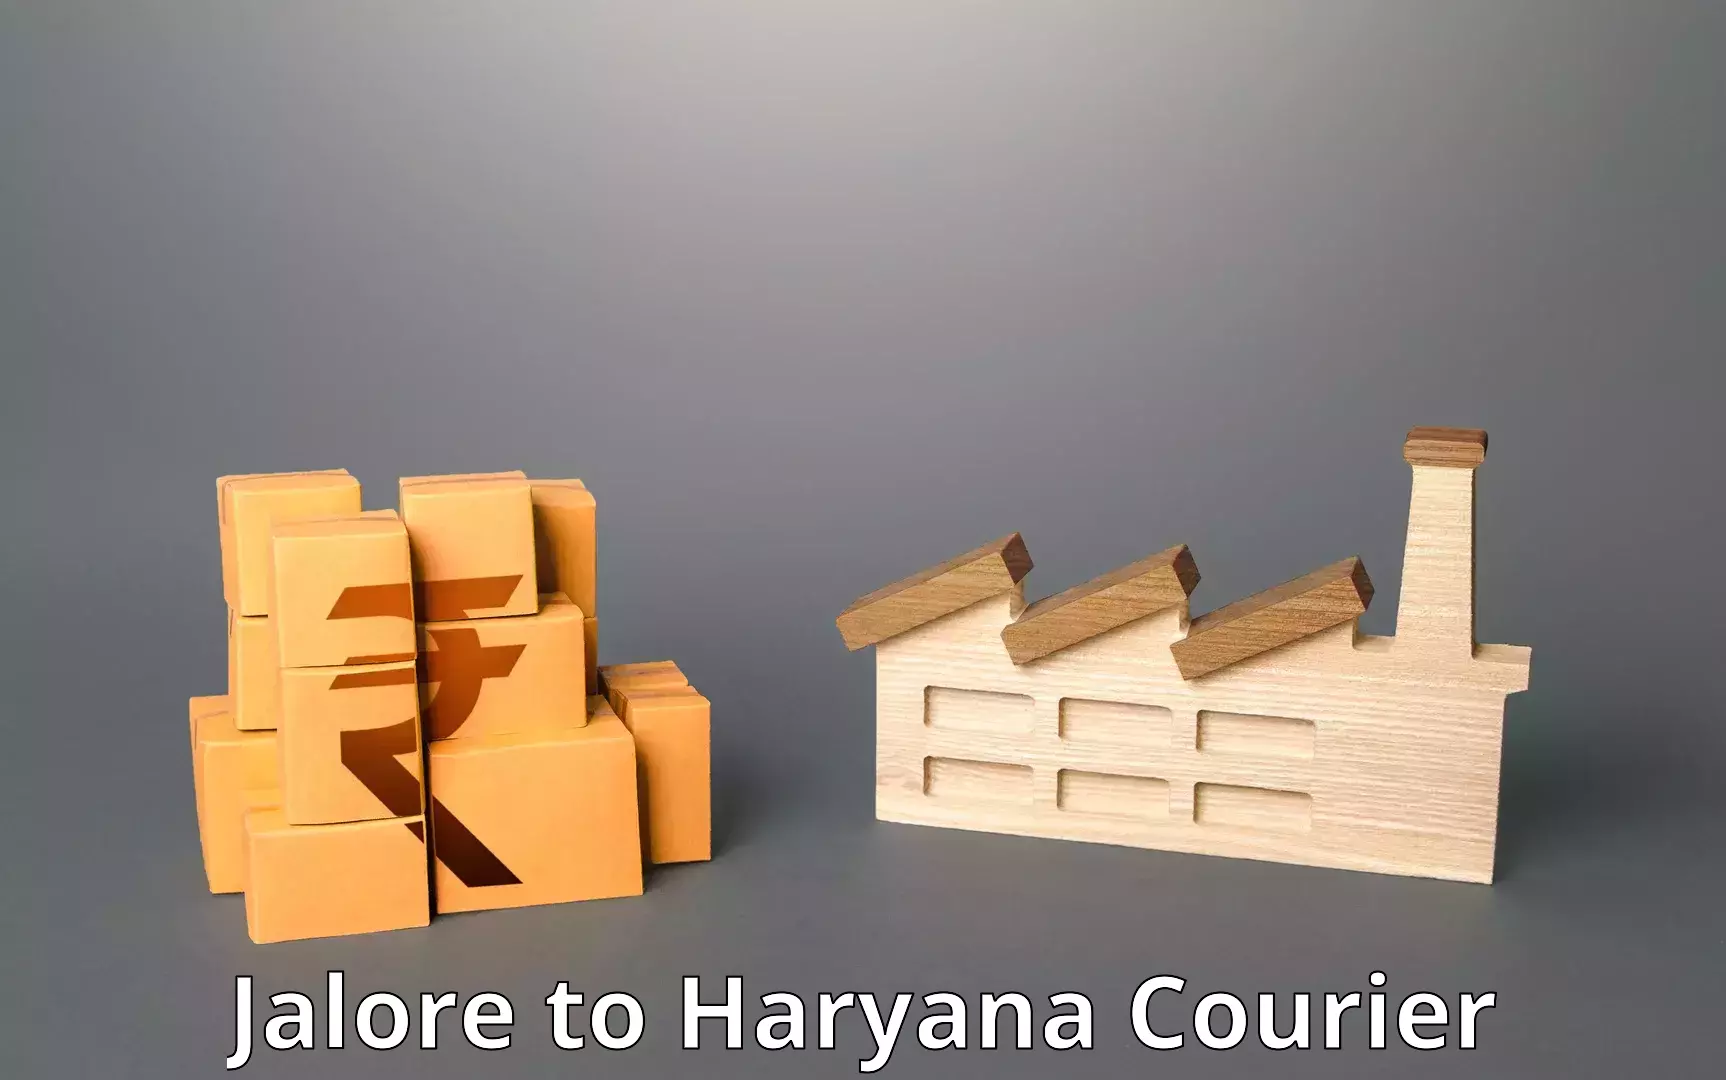 Efficient parcel service Jalore to Bilaspur Haryana